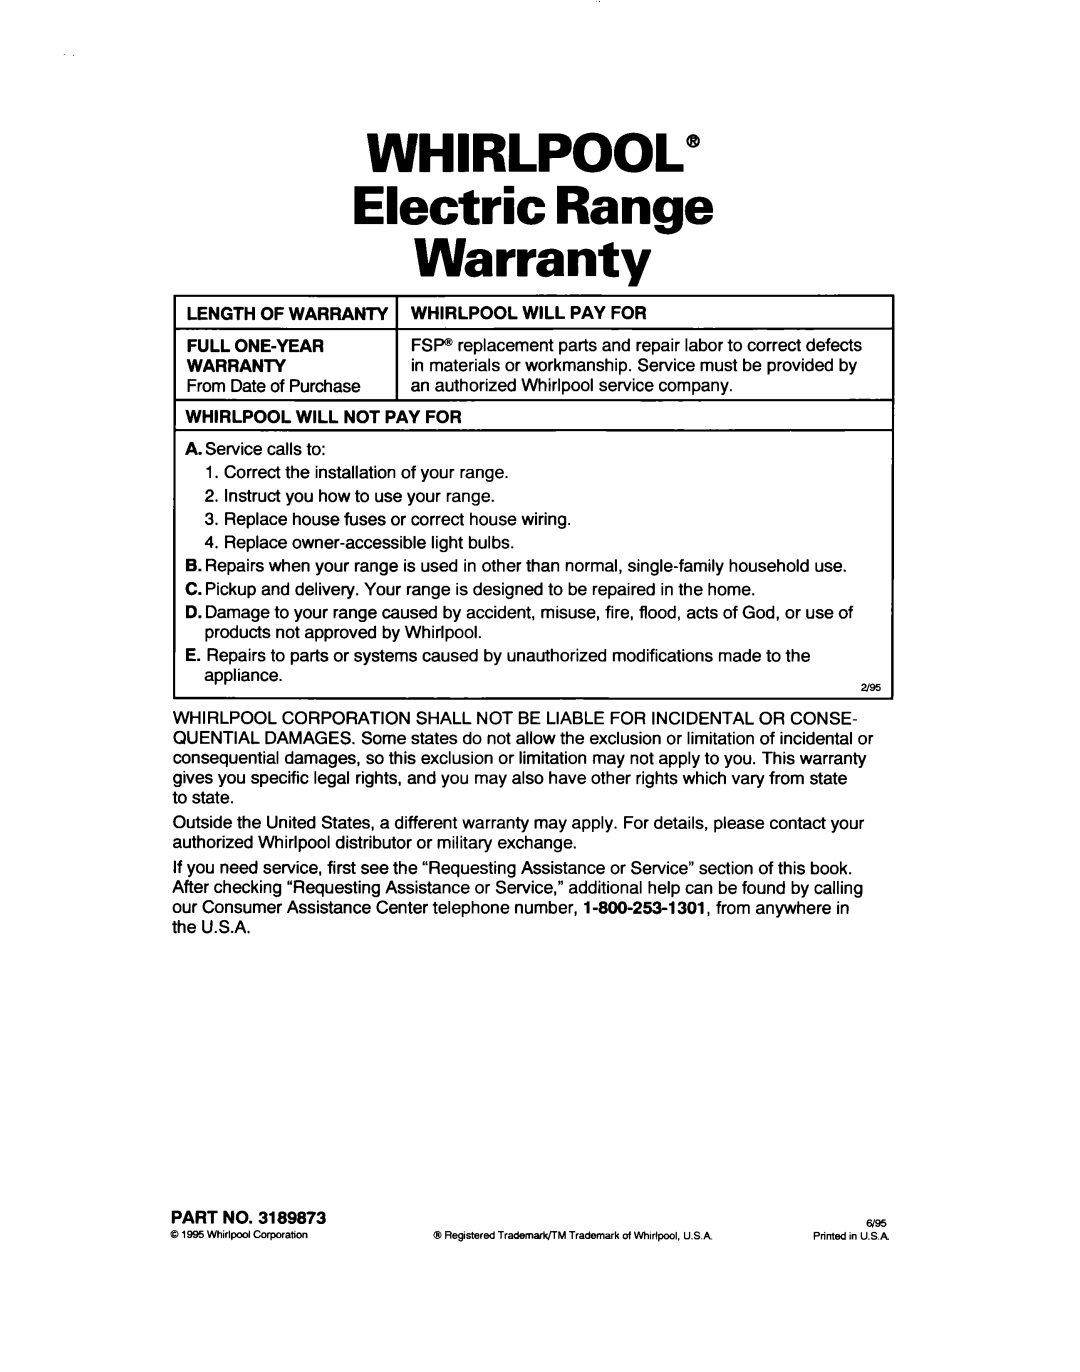 Whirlpool RF363PXD, RF361 BXD warranty WHIRLPOOL” Electric Range Warranty 